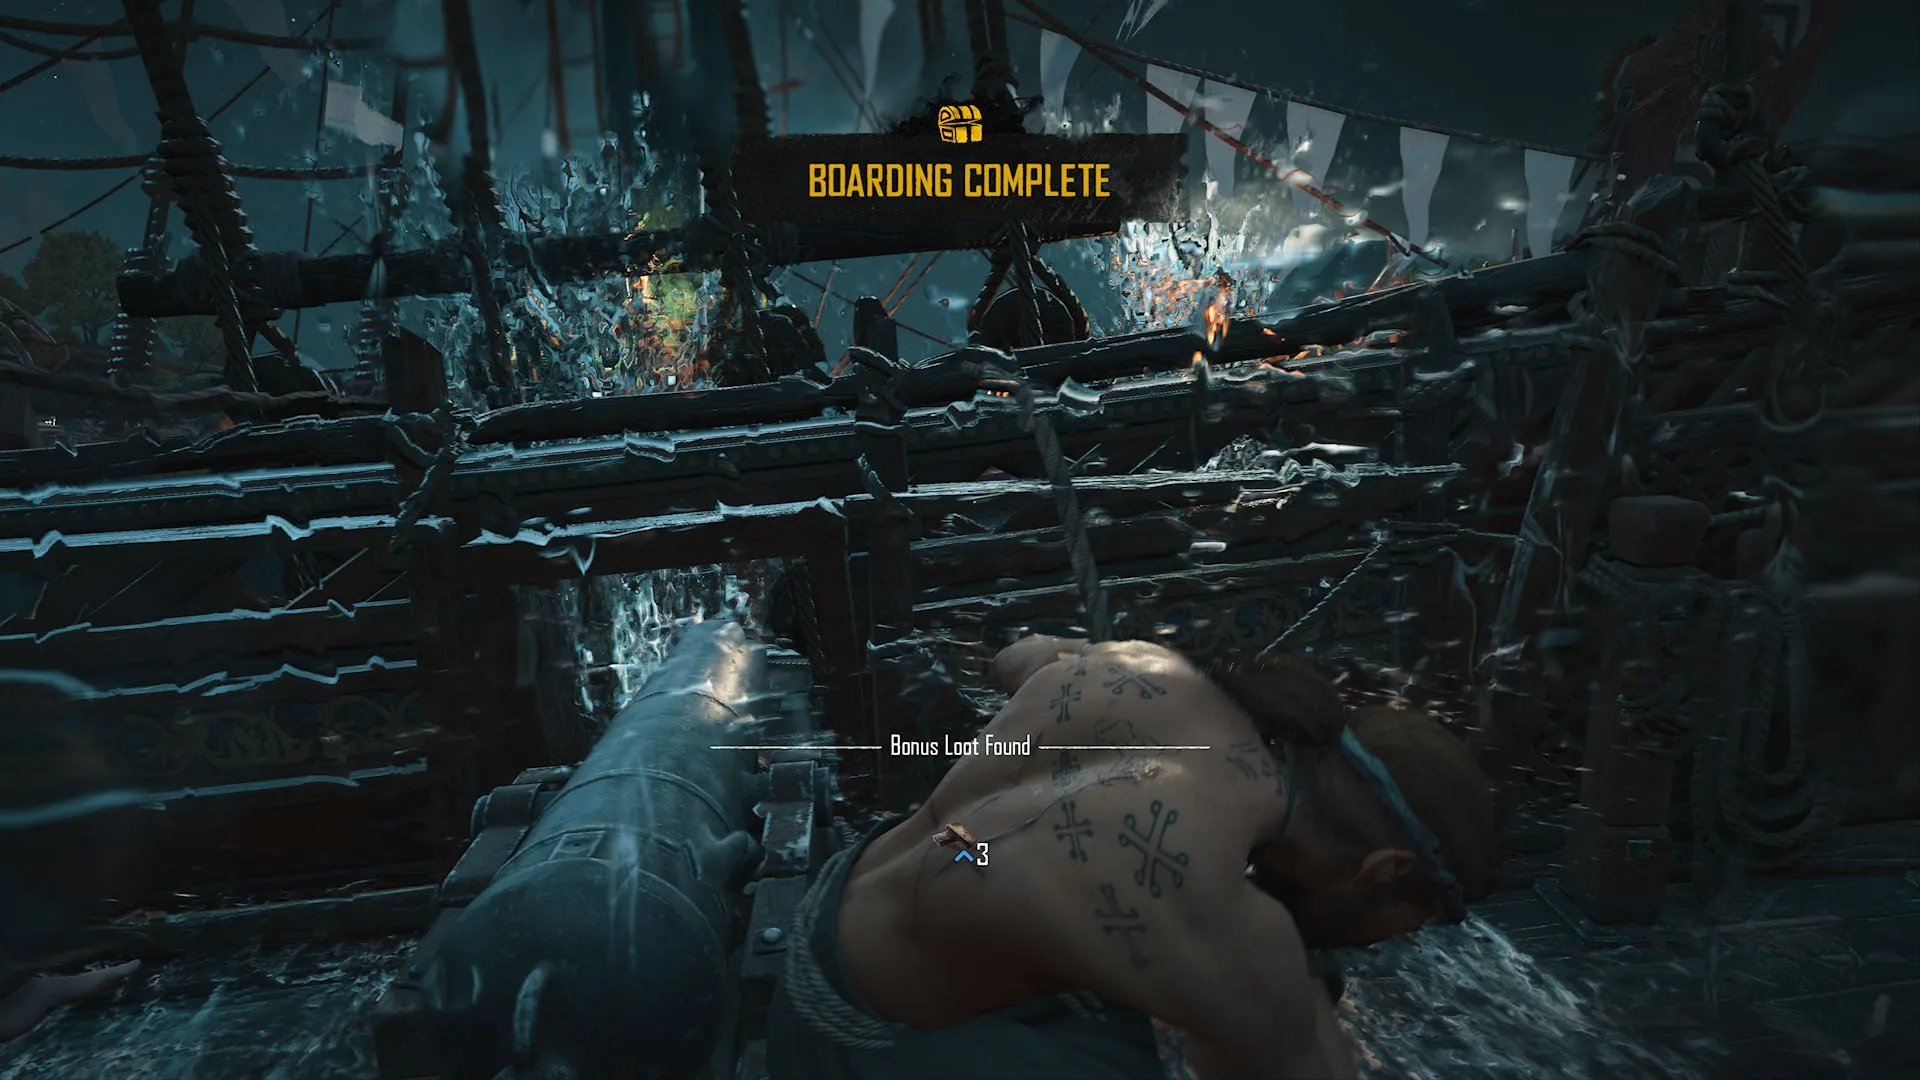 一名玩家在《骷髅与骨头》中收回一艘敌船并成功执行船员登船行动的图像。